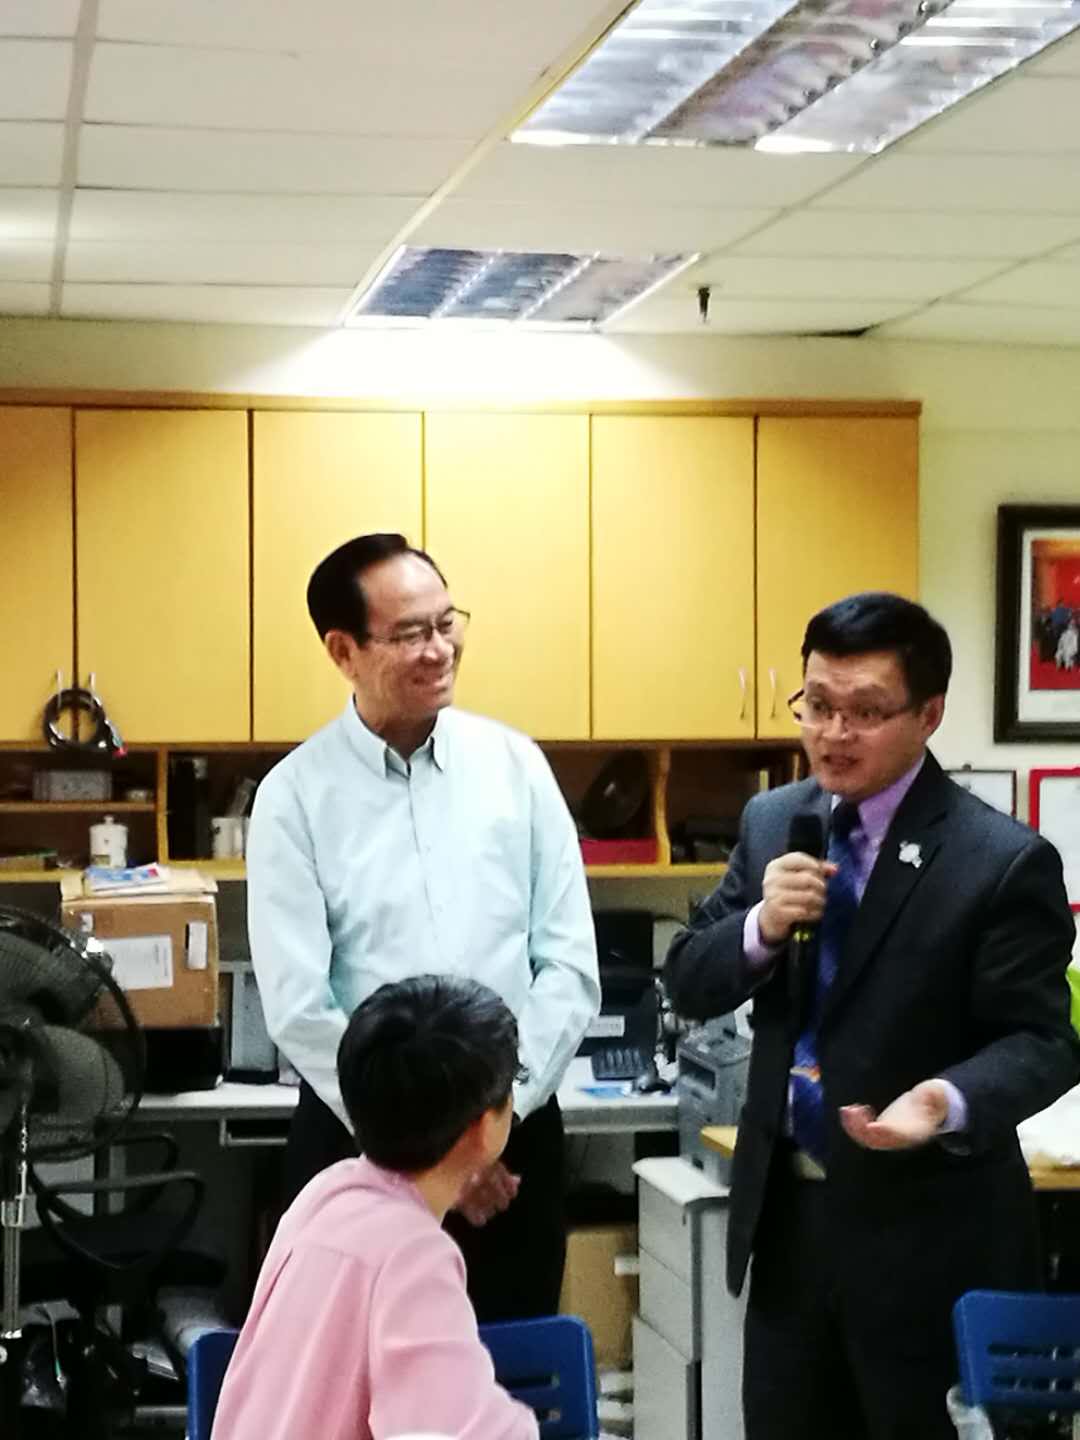 華發網總裁夏雲龍與香港愛國組織“反港獨”研討會成功舉行